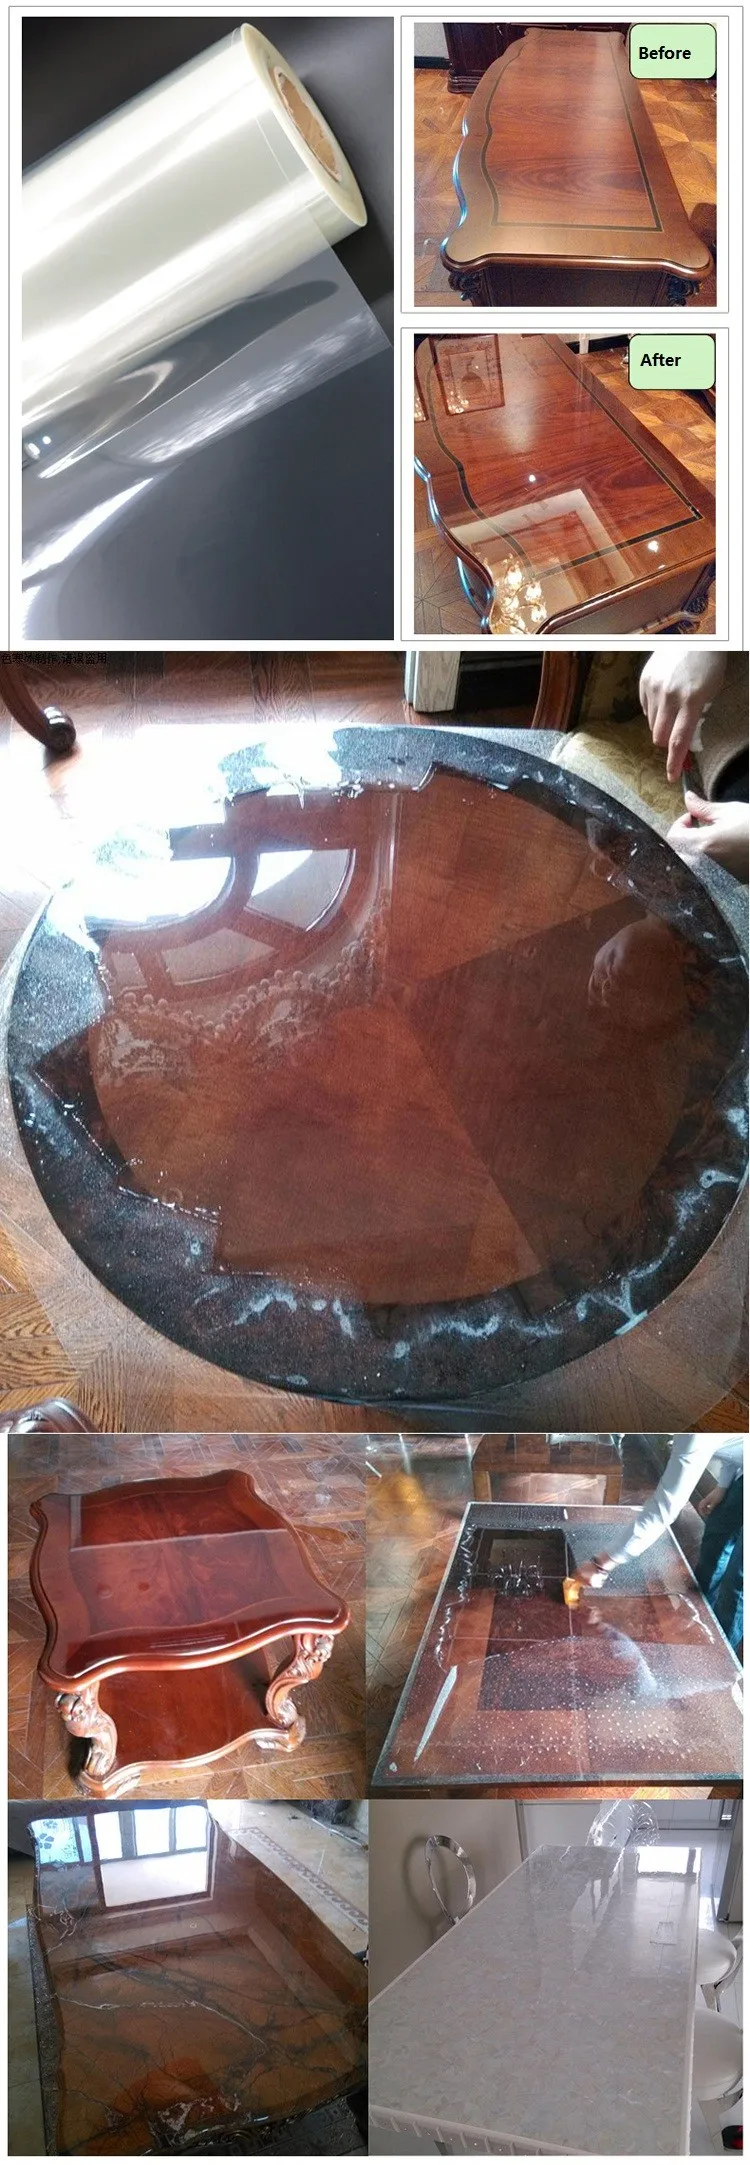 60 см X 5 м ПВХ Виниловая прозрачная настенная наклейка кухня столешница плитка жиронепроницаемый, водонепроницаемый самоклеющиеся обои оконная стеклянная пленка